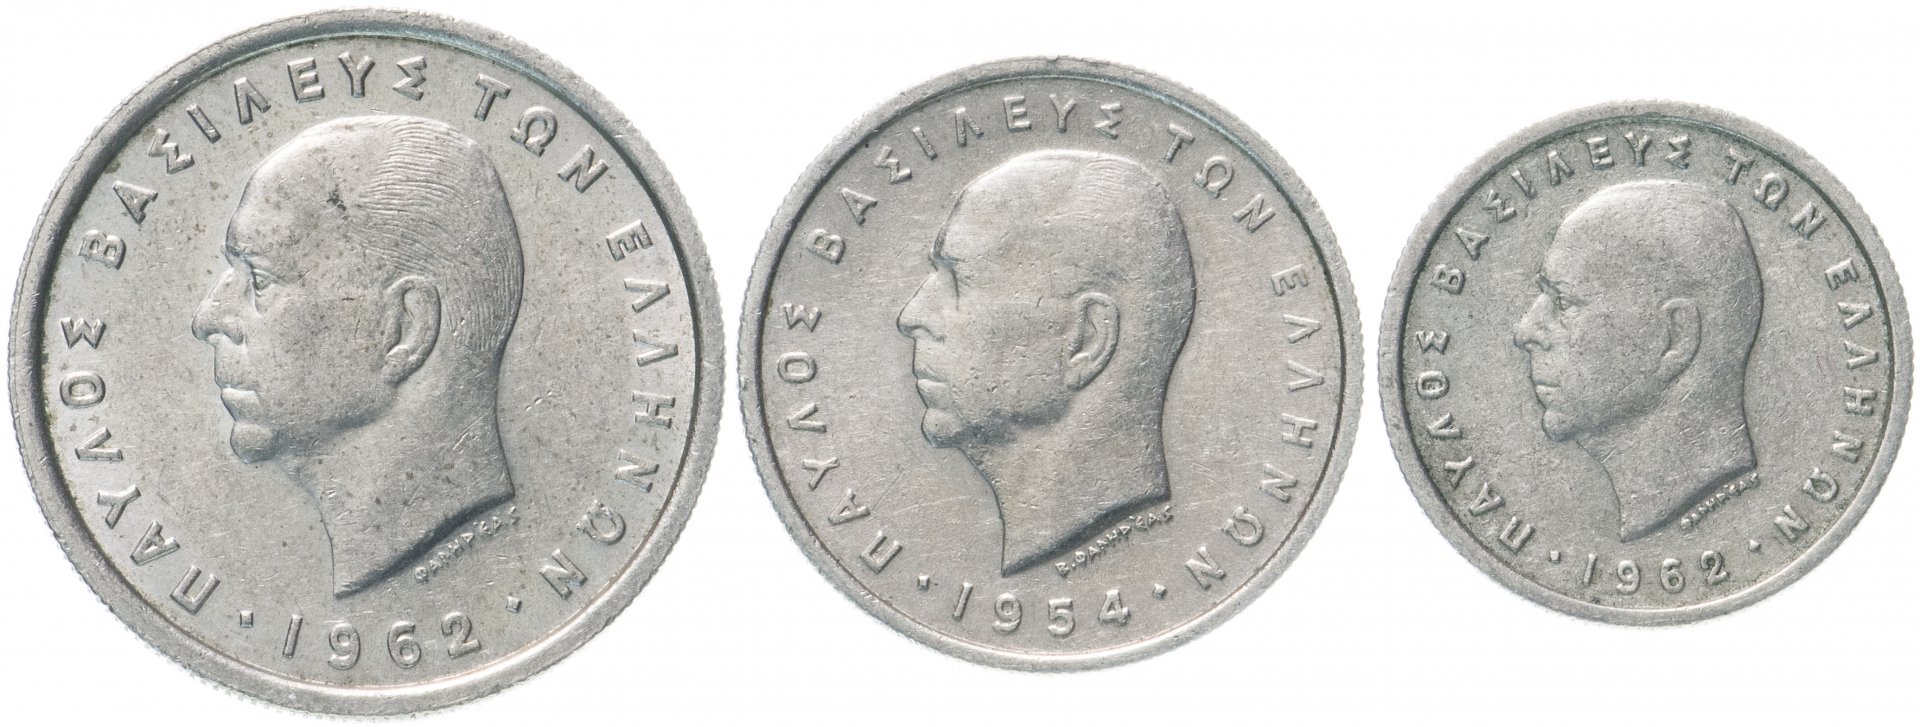 Монета 1954 года цена. 1954 Футбол монета. Набор Греция 1994-1999. 1954 Монетка семейная картинка.